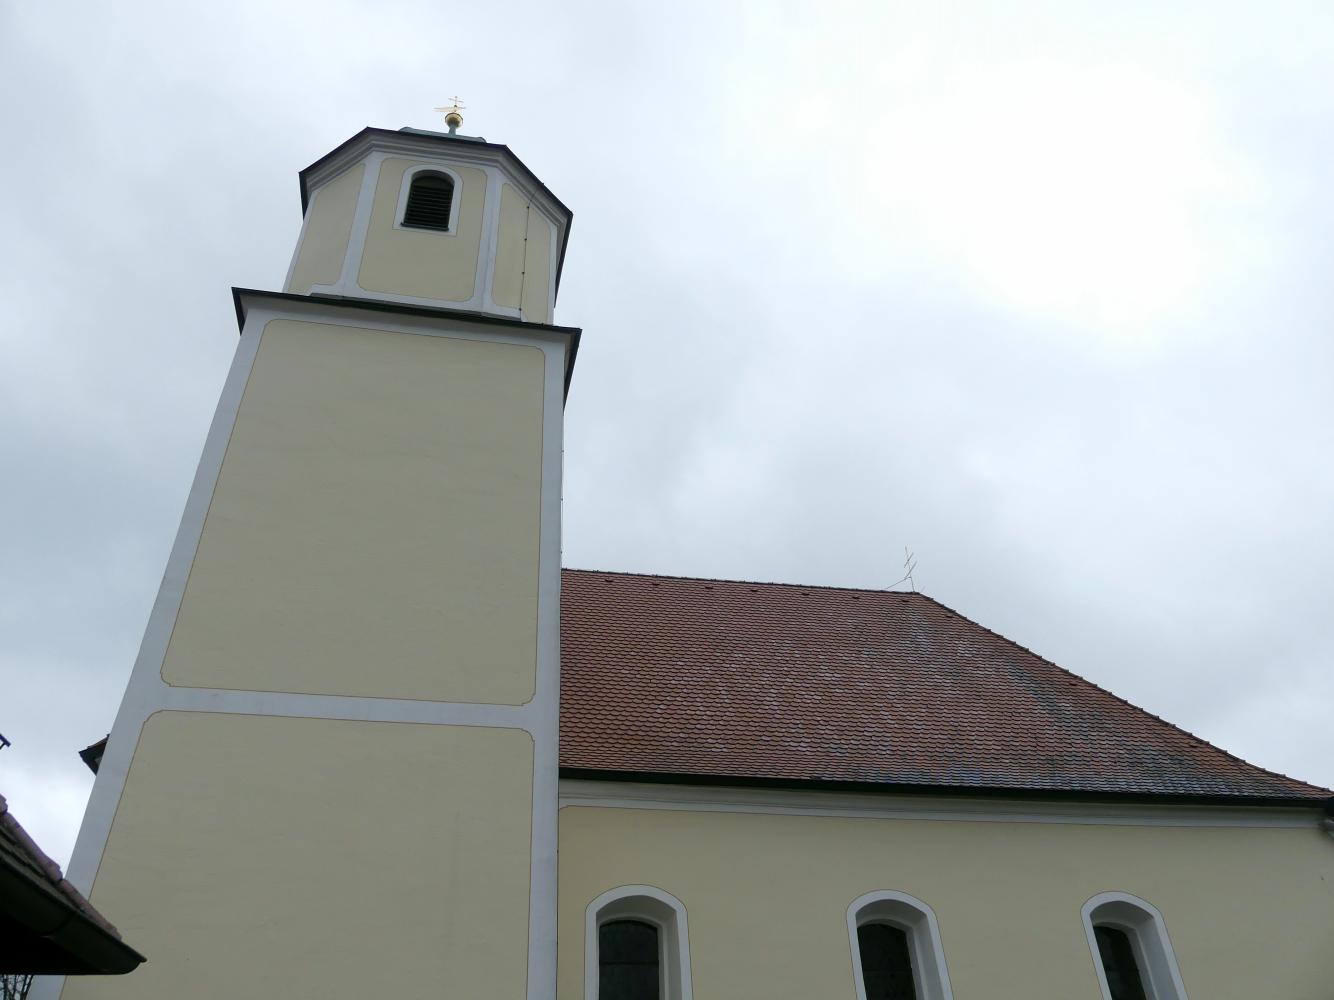 Deusmauer (Velburg), Pfarrkirche St. Maria und Margareta, Bild 2/5